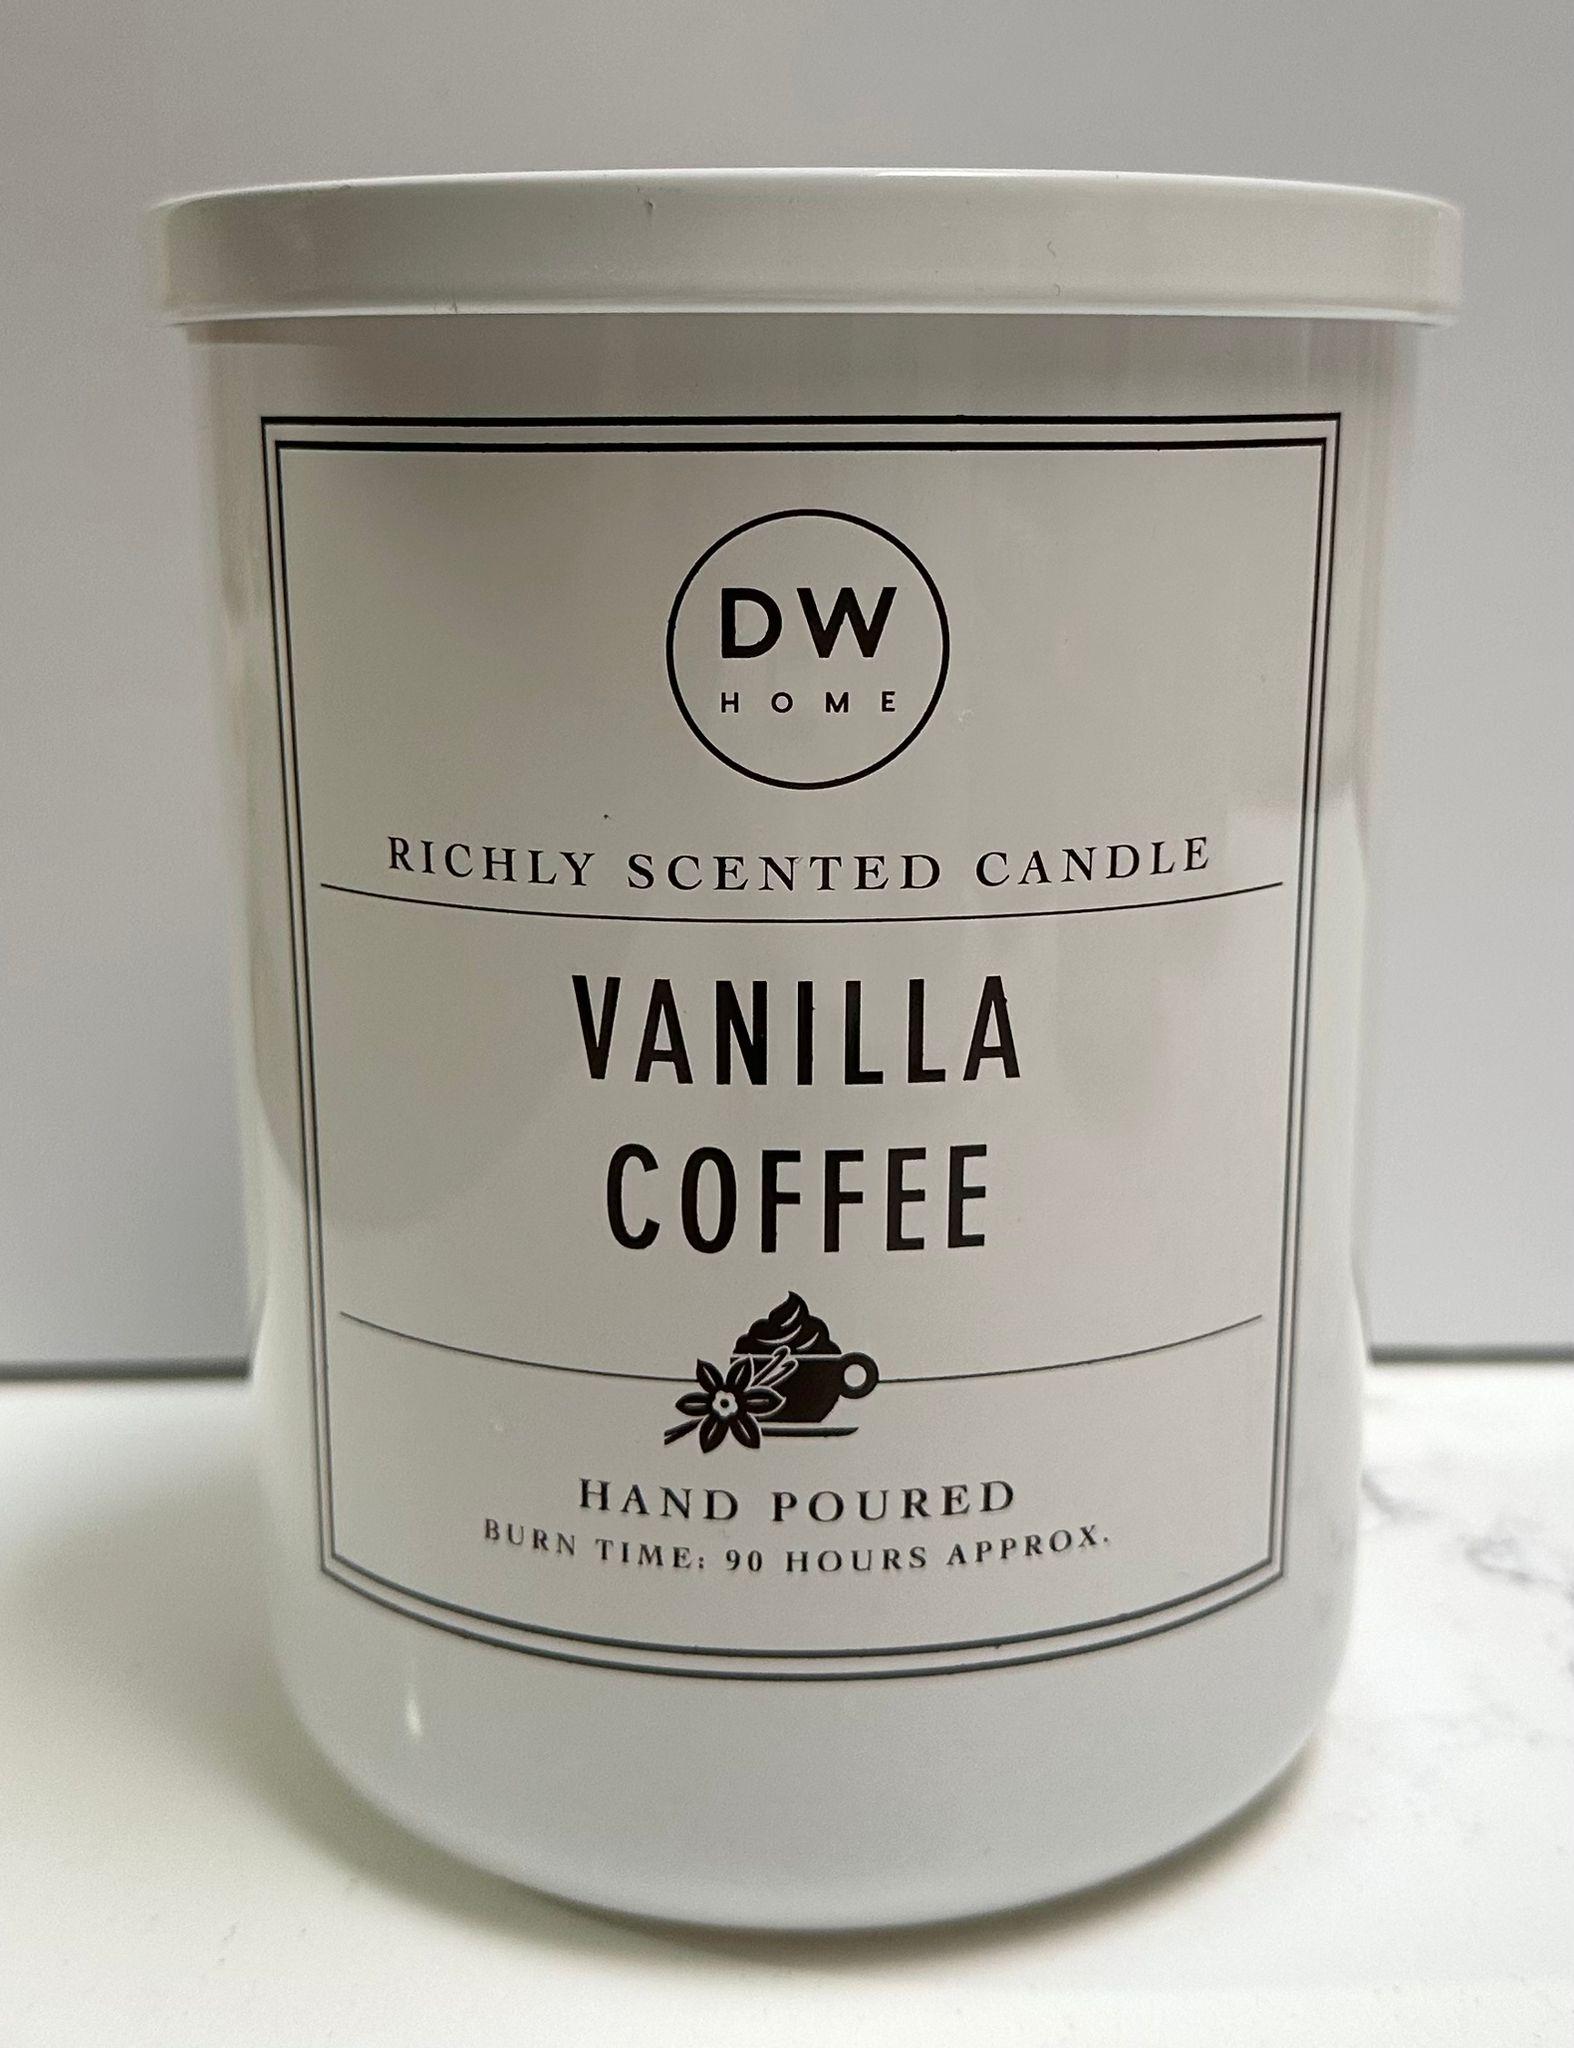 נר ריחני - Vanilla Coffee